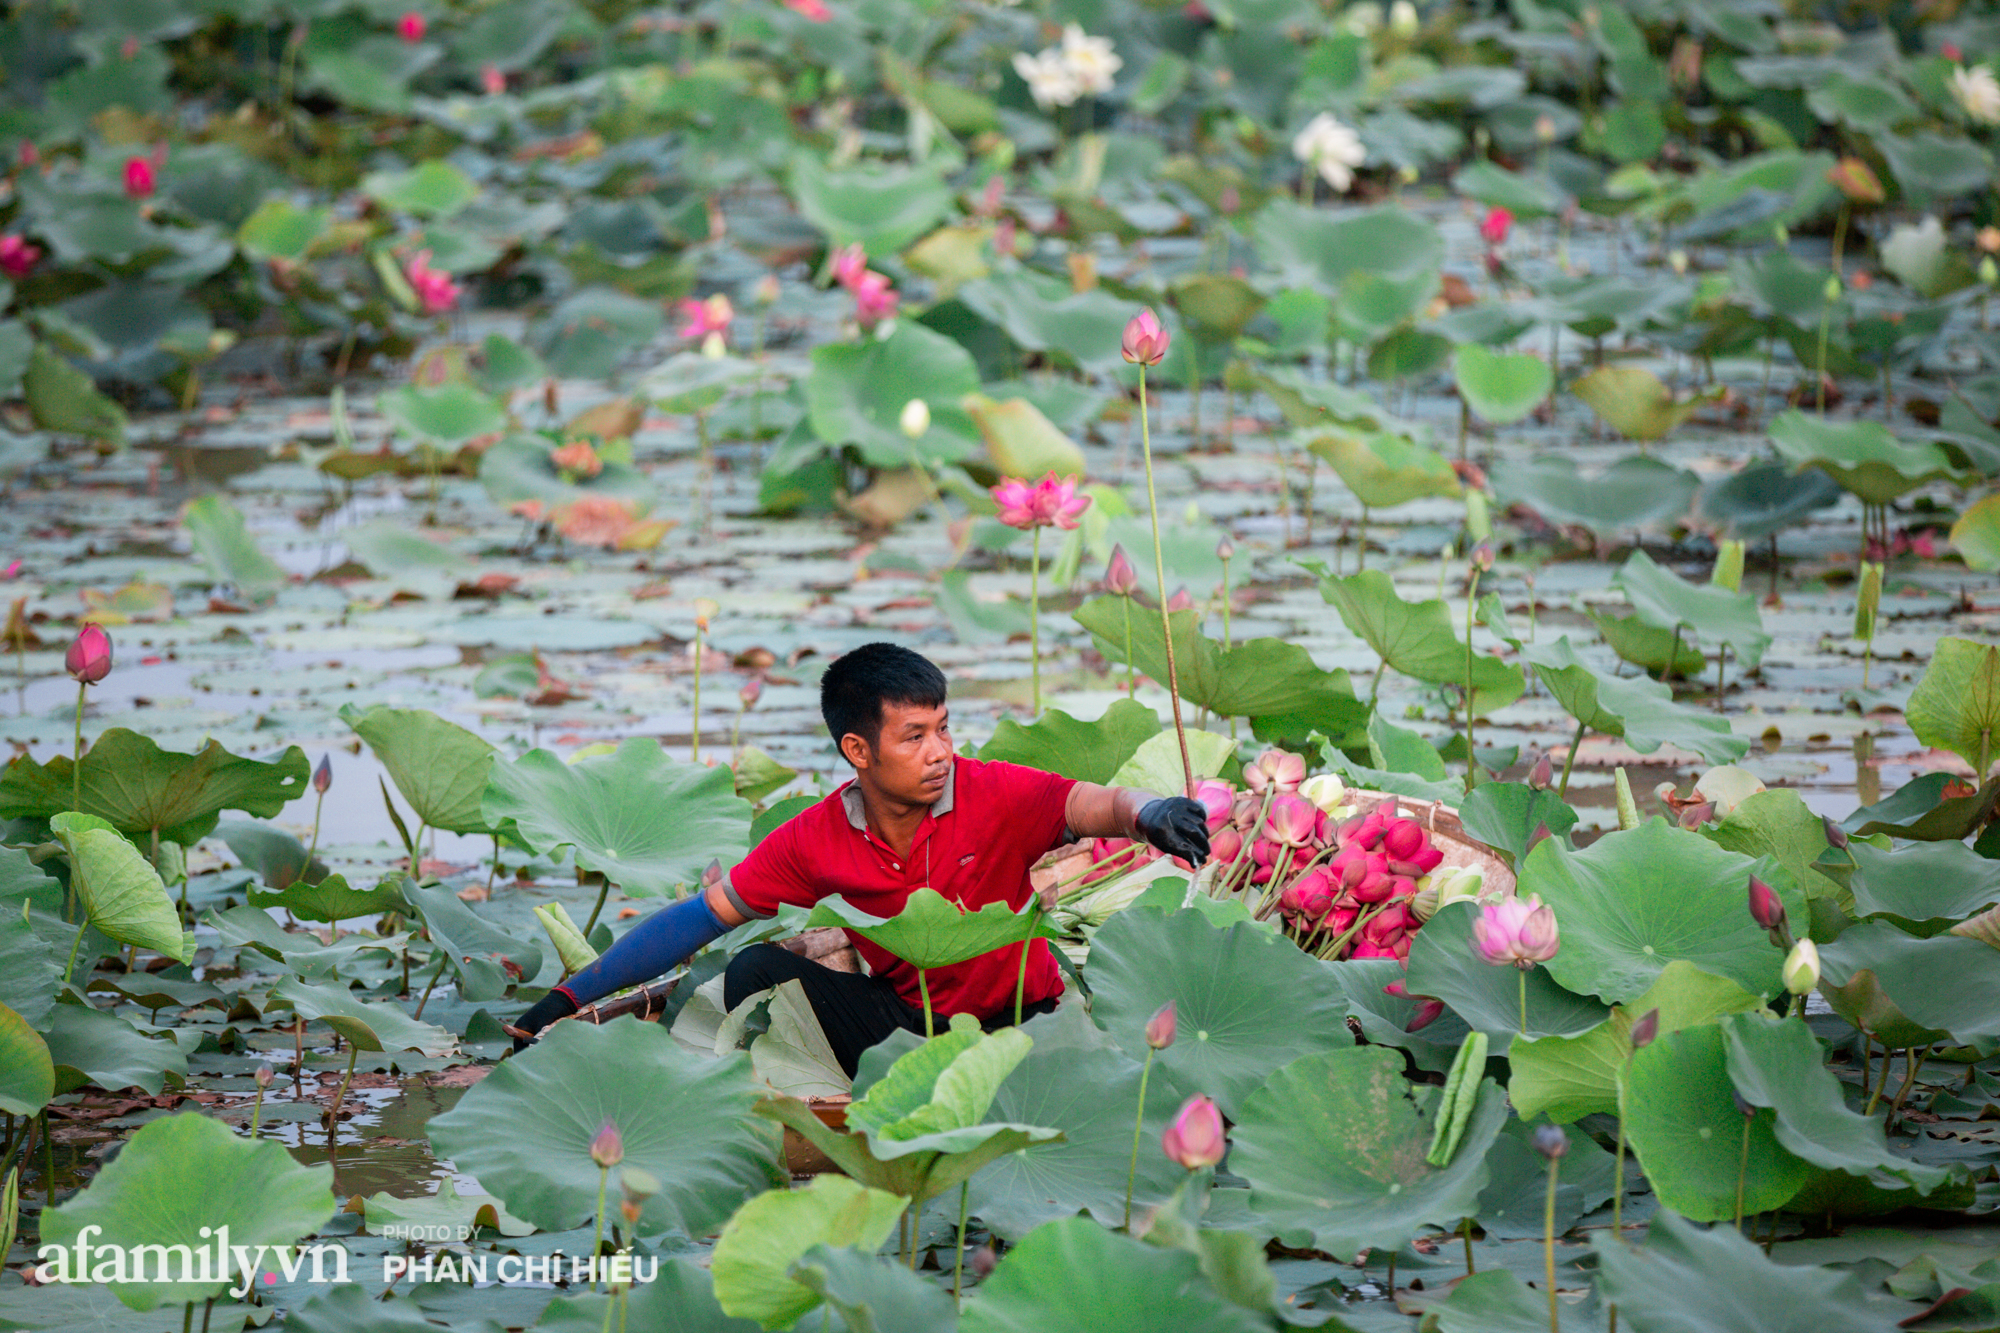 Ngợp với đầm sen nhiều loại nhất Việt Nam đang thi nhau đua nở, muốn hưởng trọn hương sắc phải cầu kỳ có mặt từ lúc sớm tinh mơ - Ảnh 9.